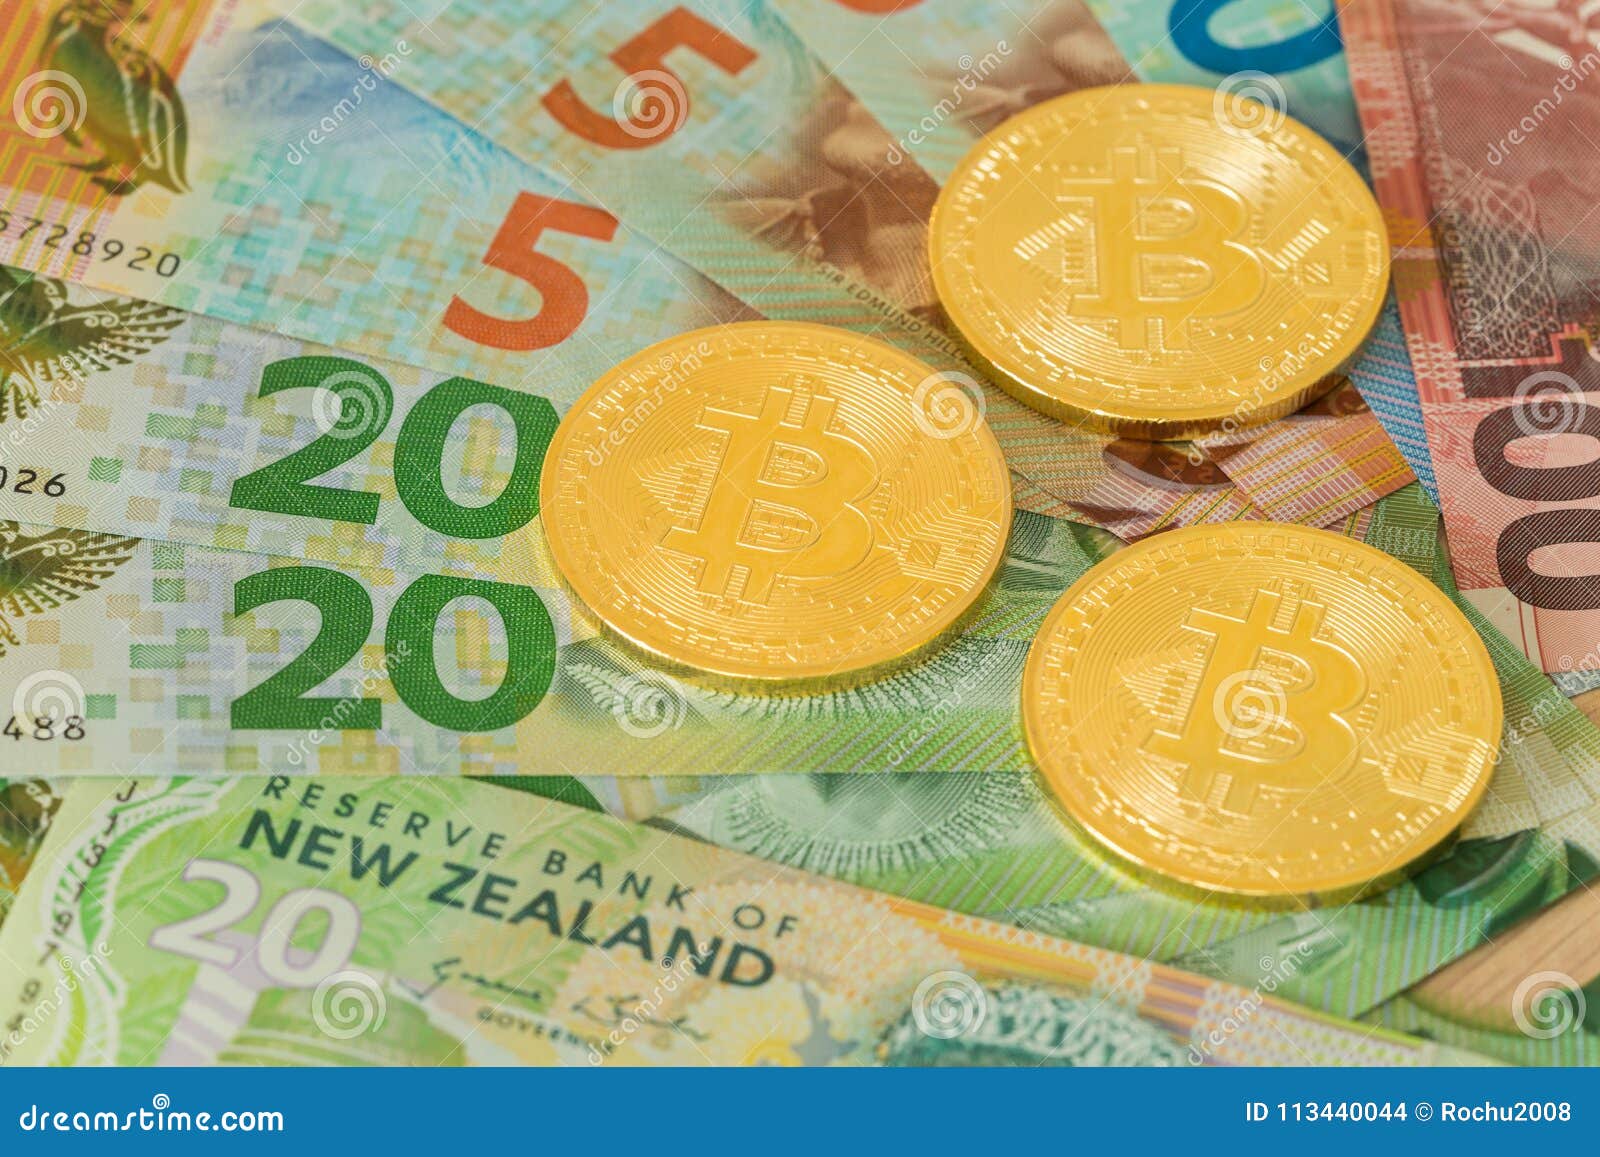 Биткоин новая зеландия бутово выгодный курс обмена валюты